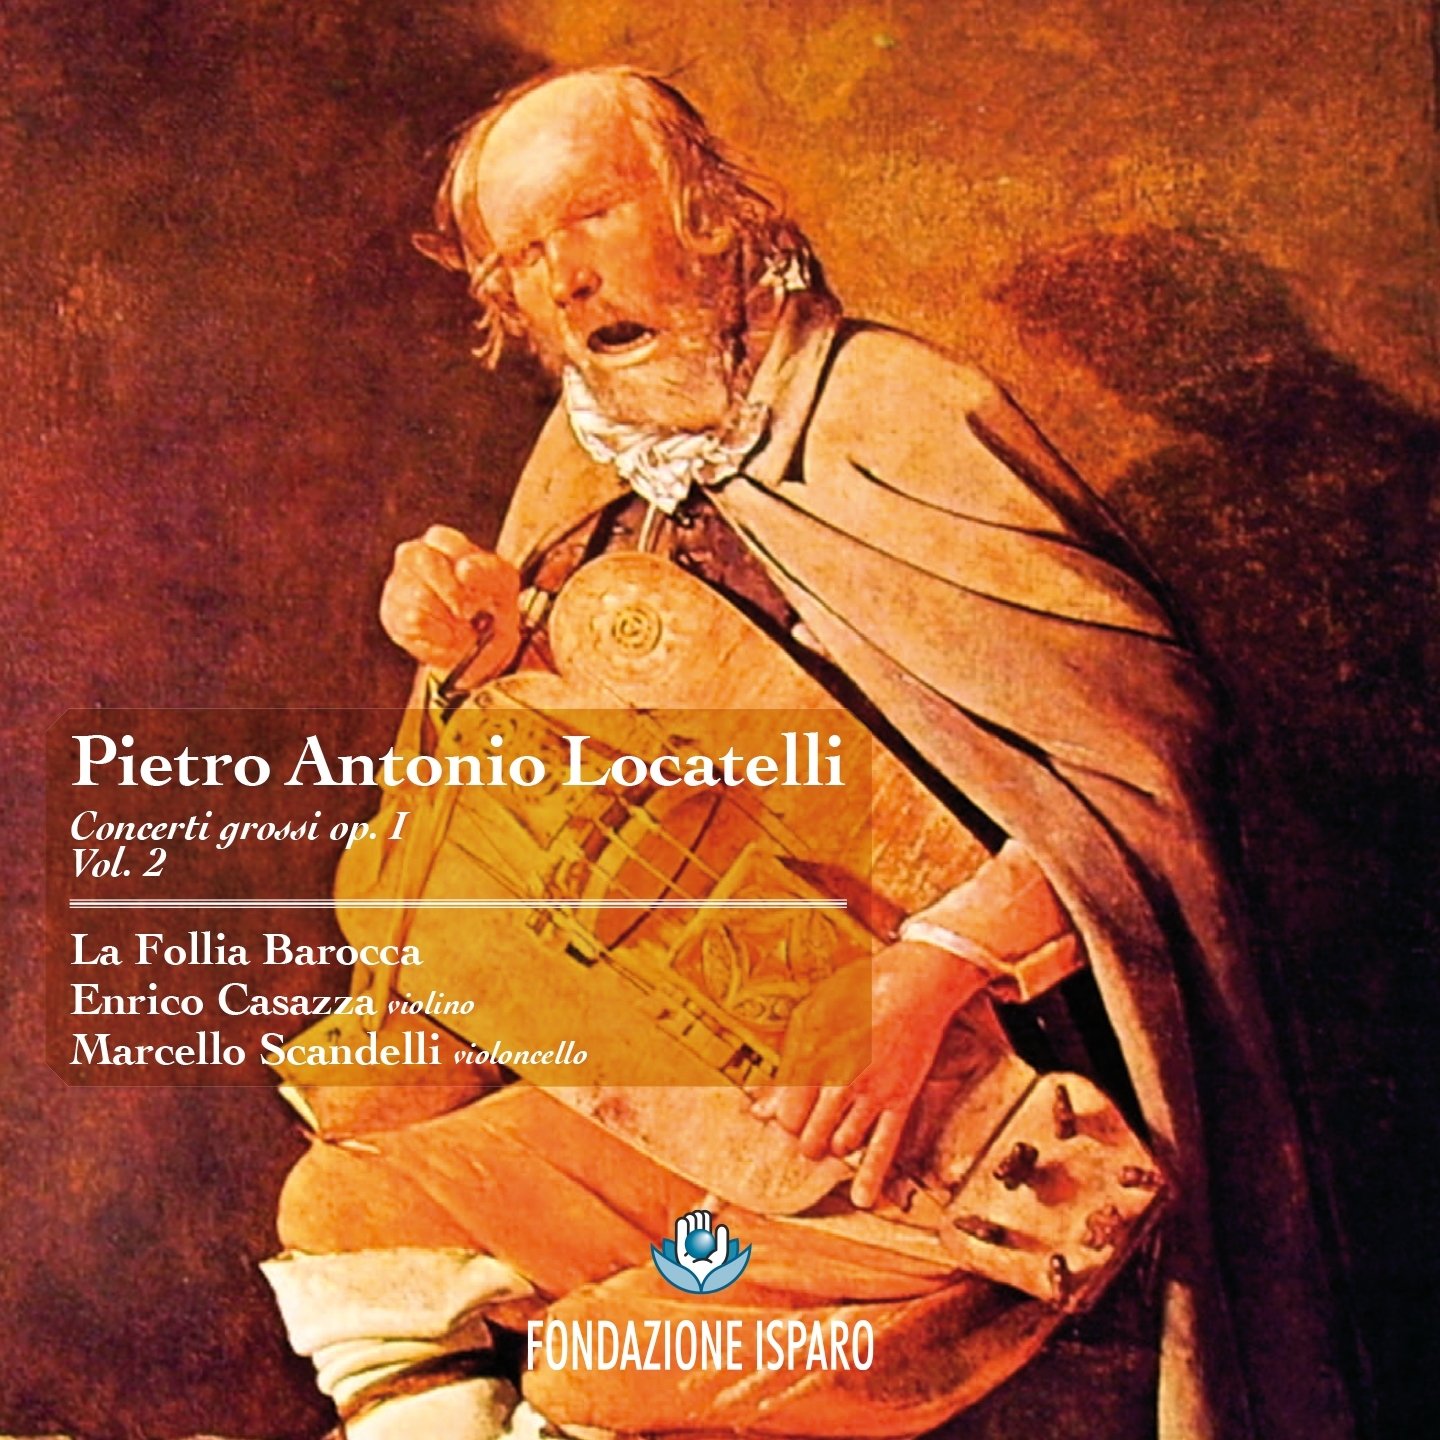 Pietro Antonio Locatelli: Concerti grossi, Op. 1 (Vol. 2)